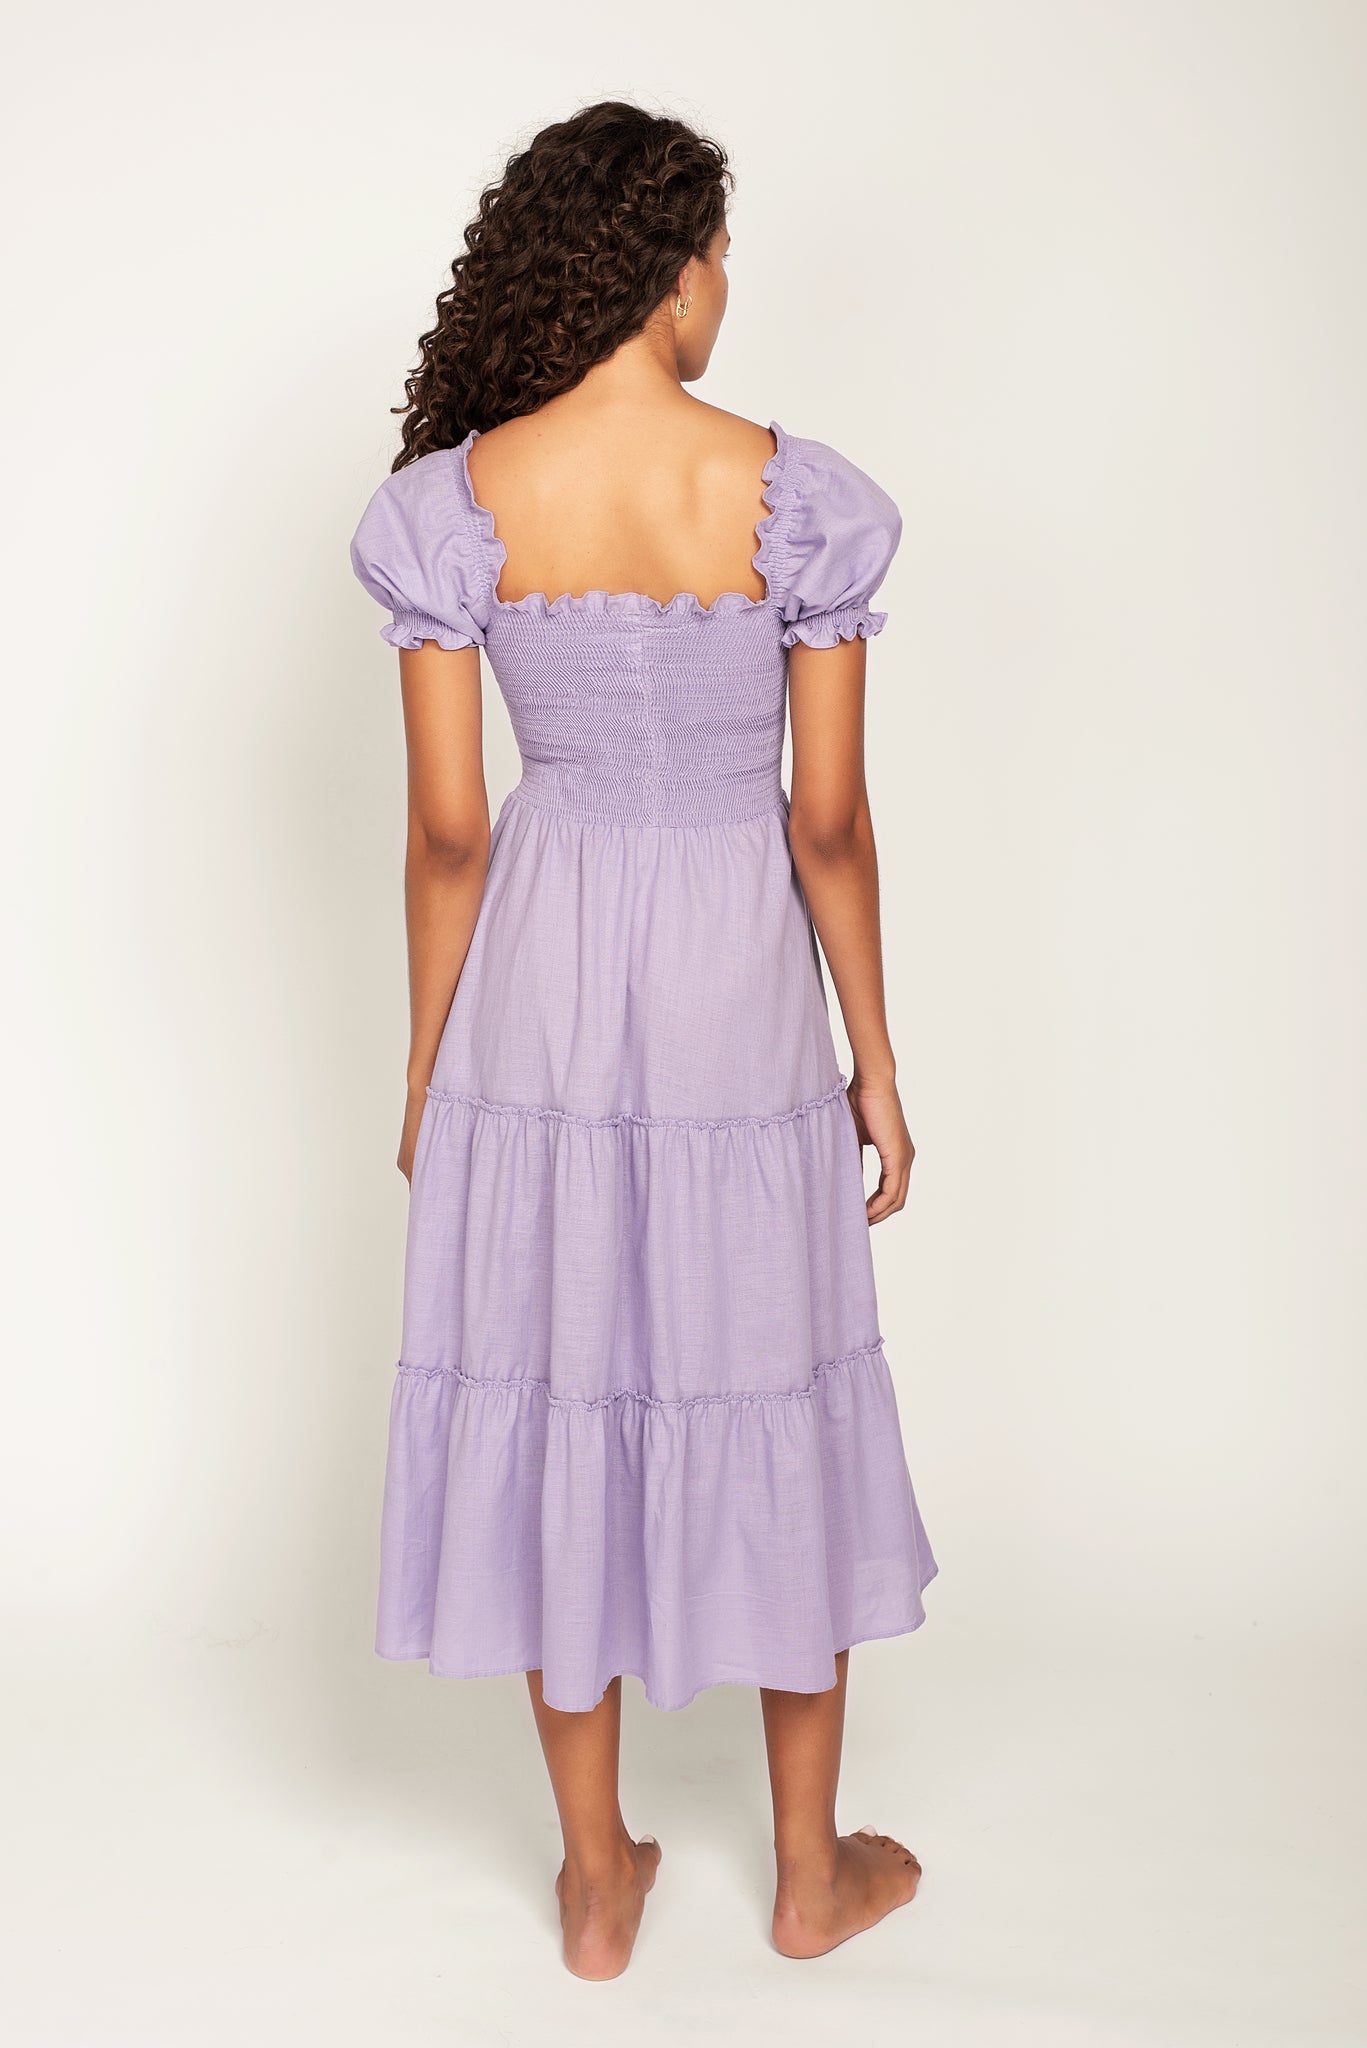 Coco Midi Lavender Dress